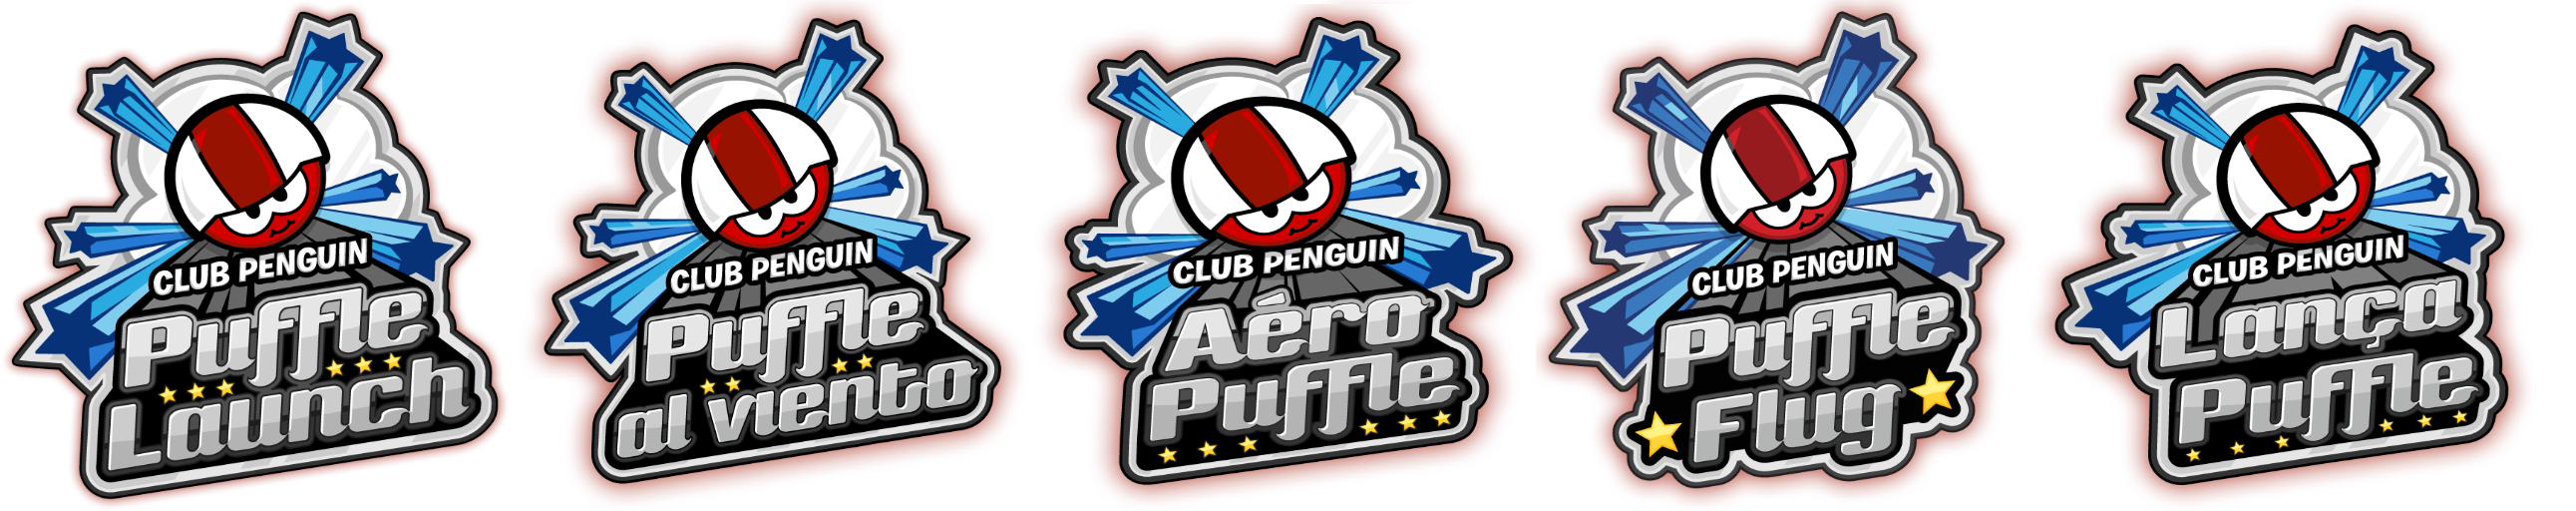 Club Penguin Puffle Launch - Logo